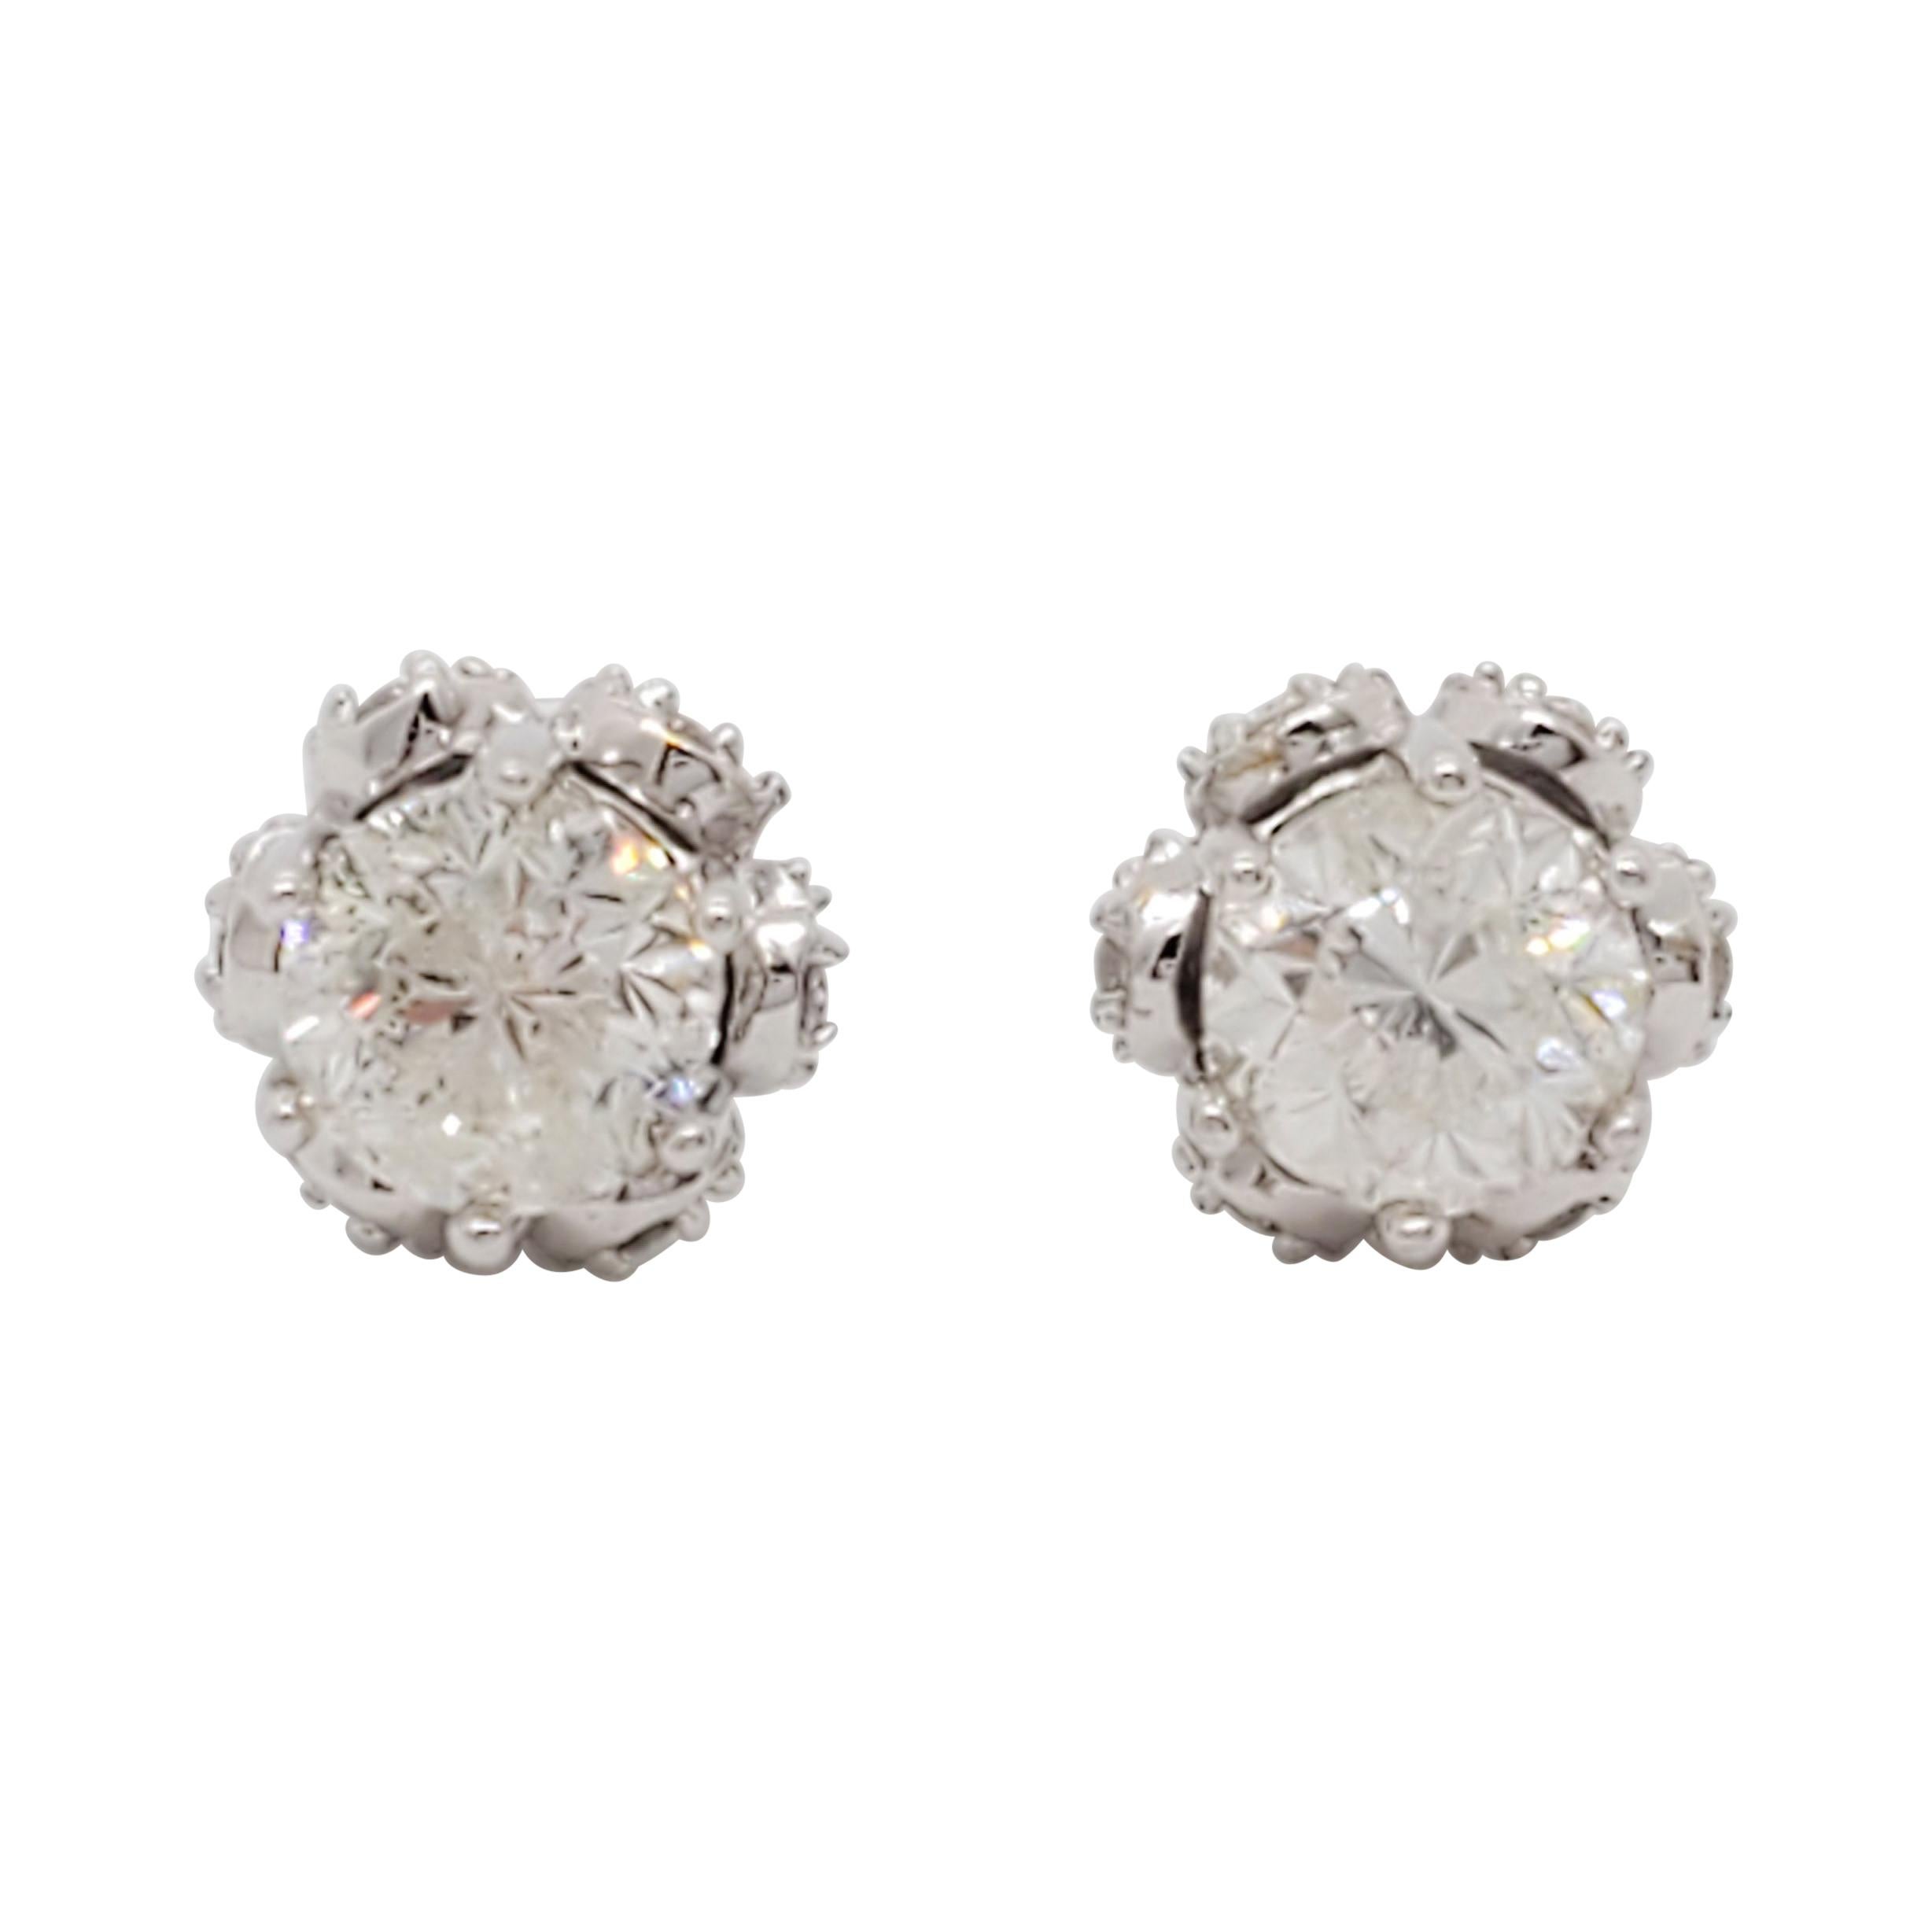 White Diamond Stud Earrings in 14k White Gold